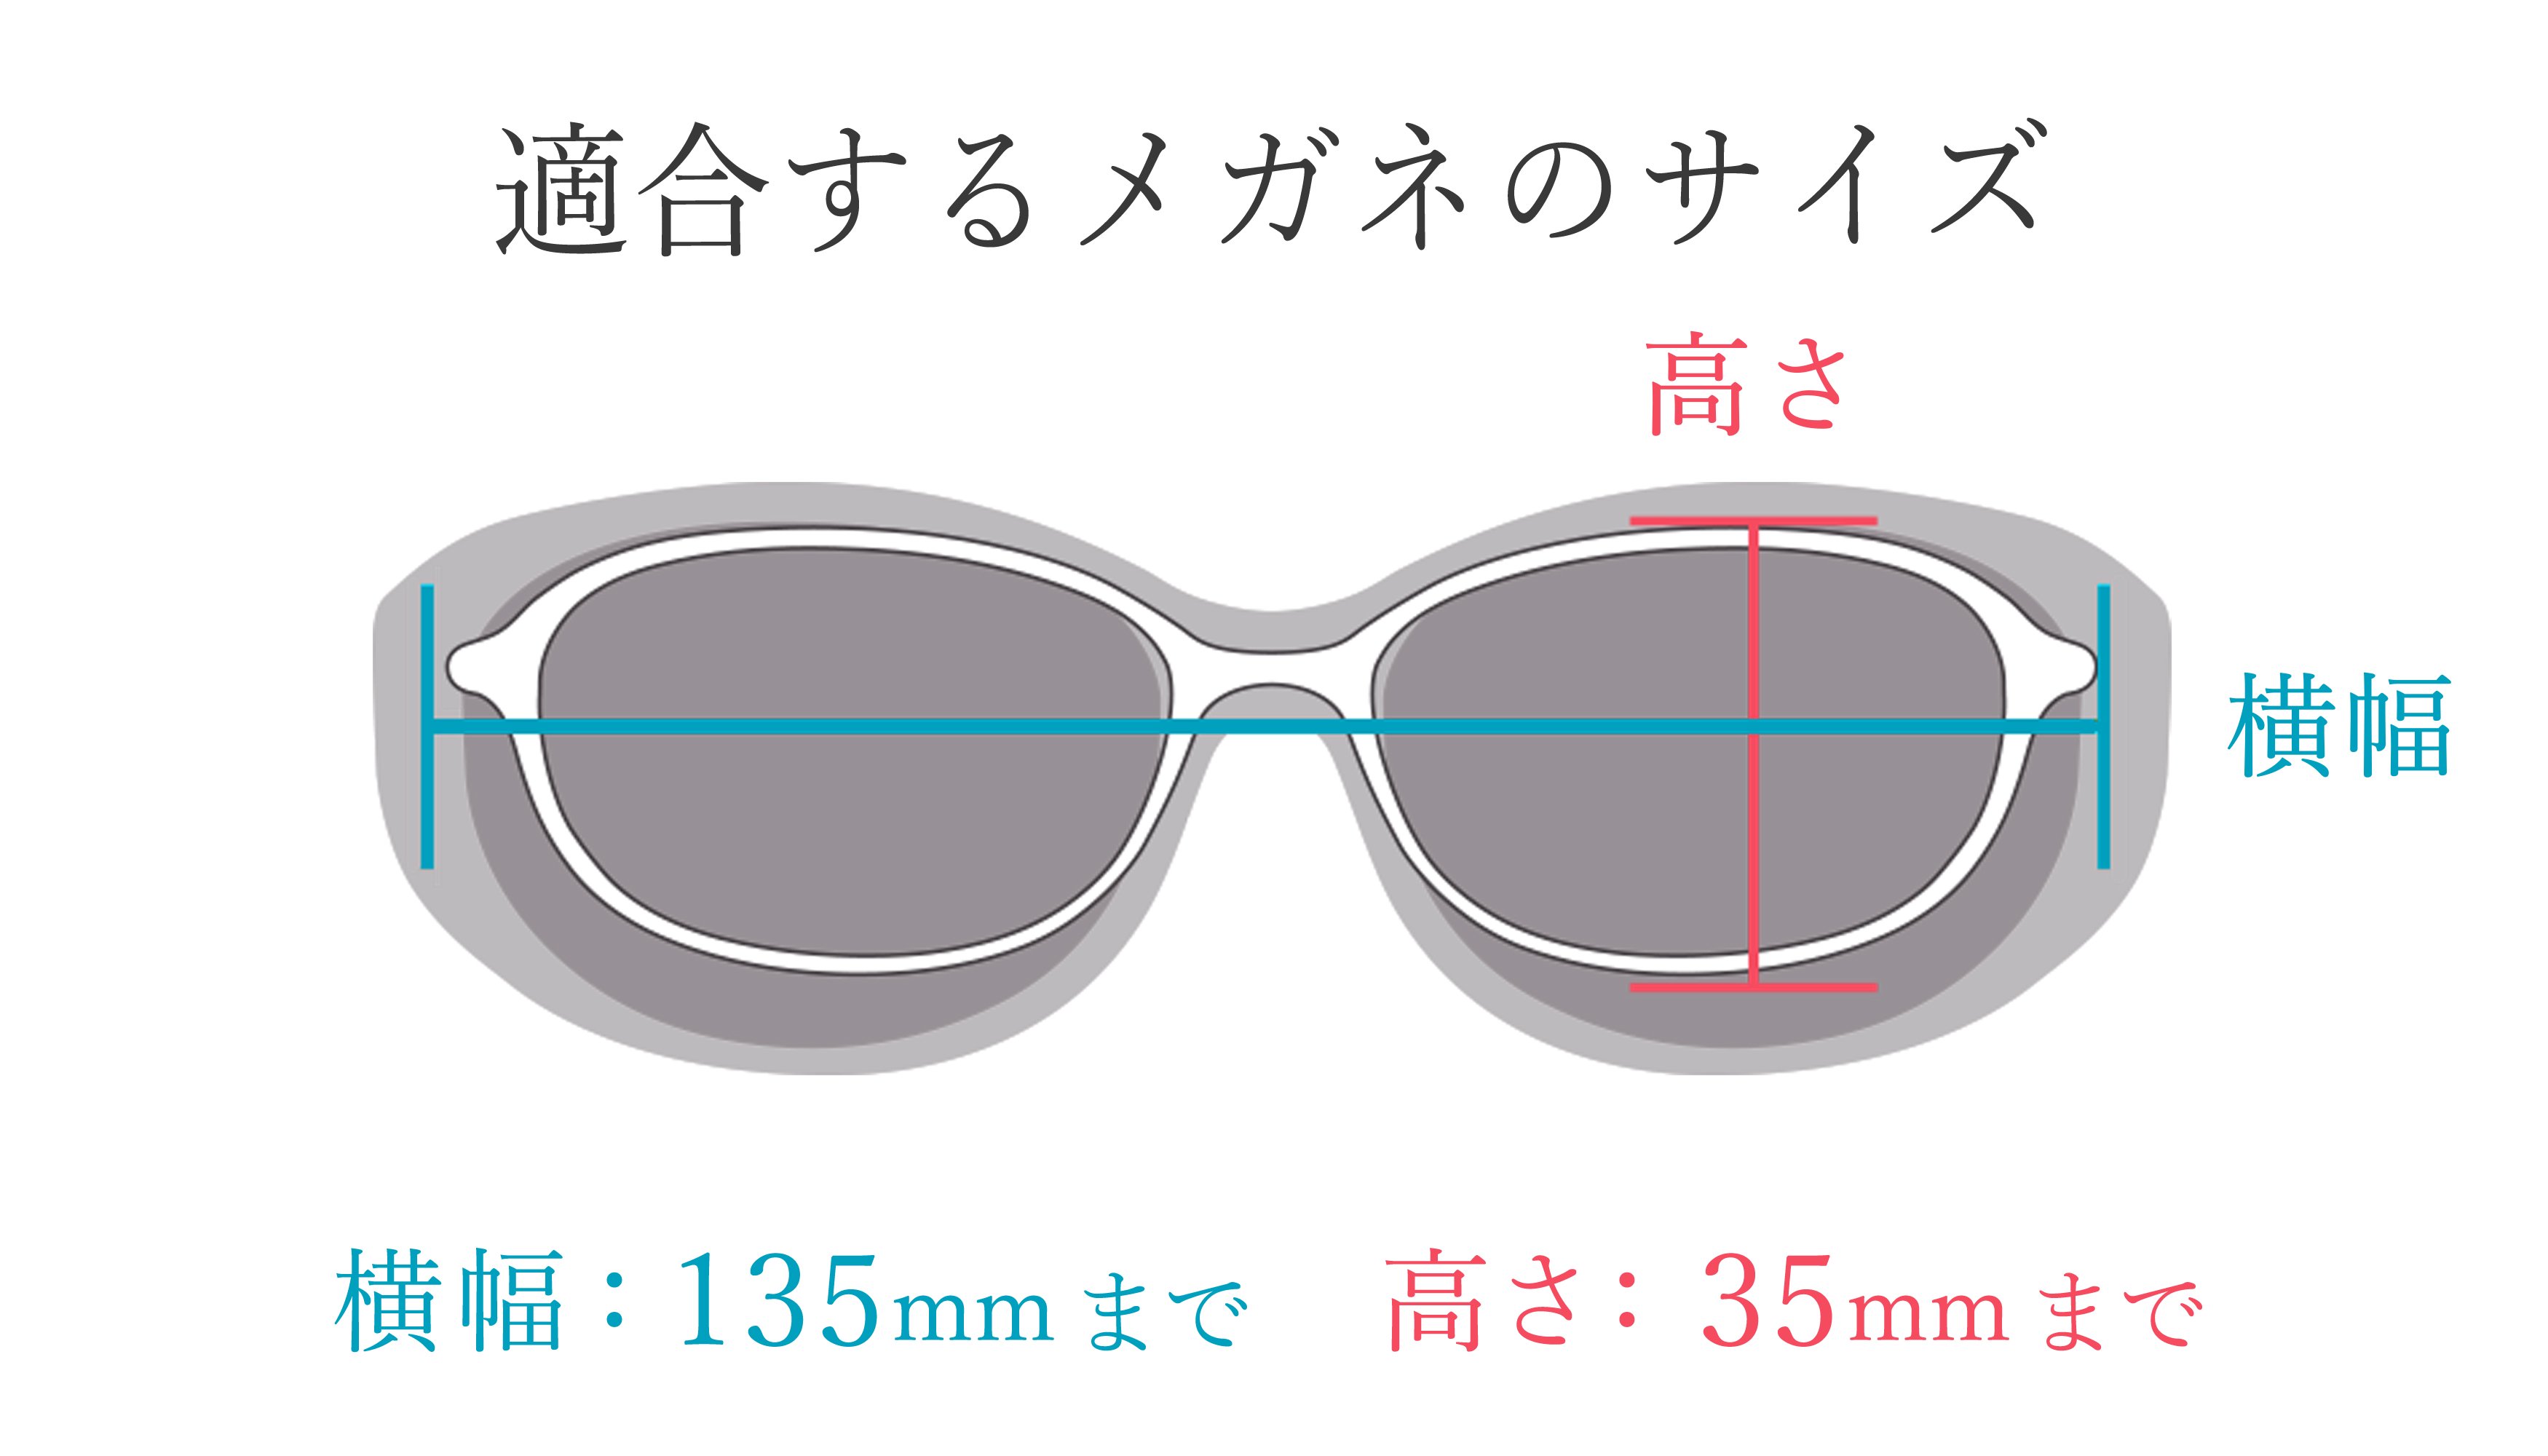 適合するメガネのサイズ